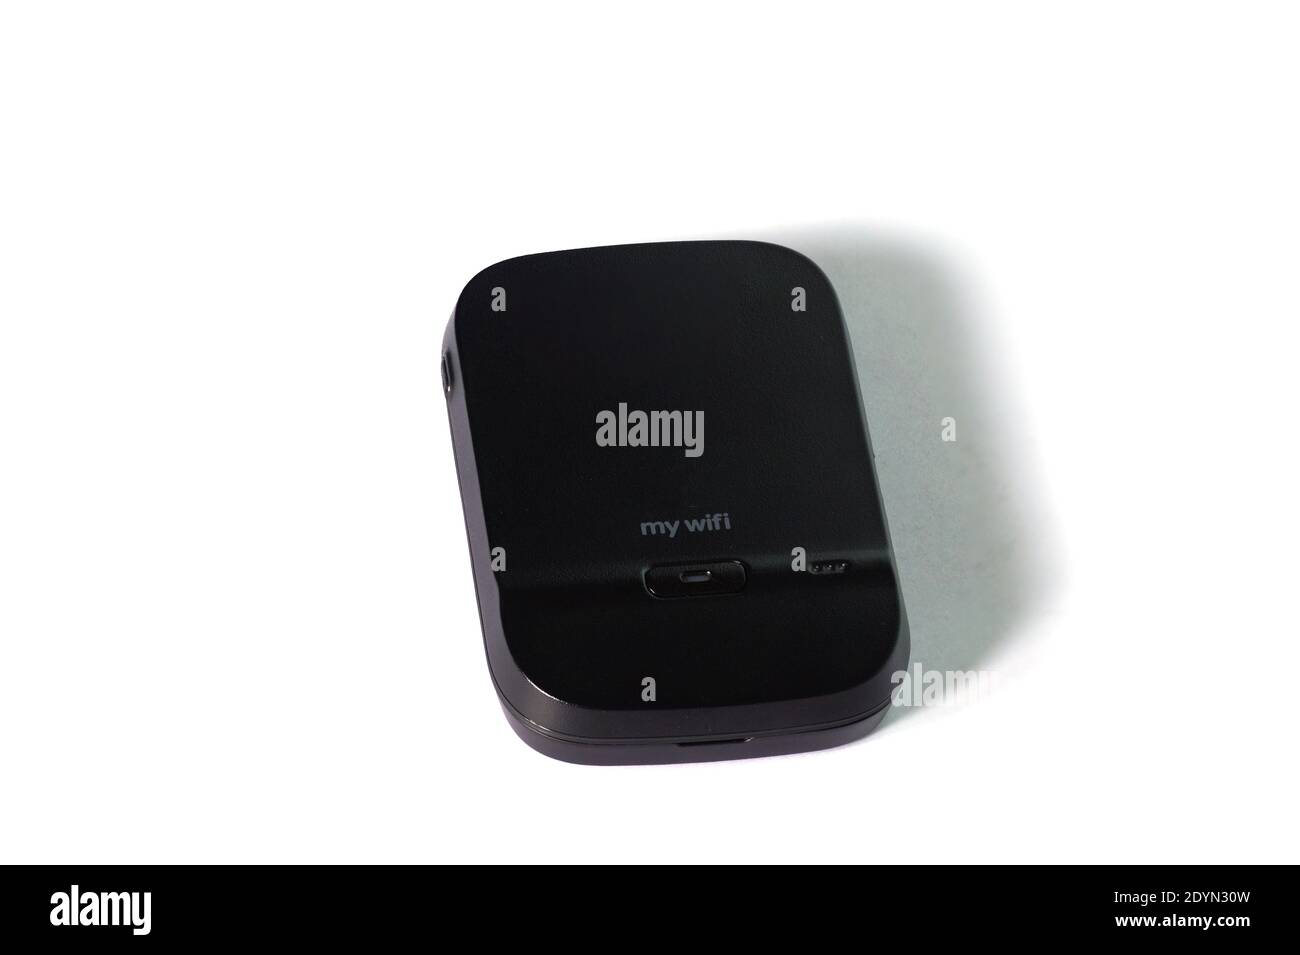 https://c8.alamy.com/comp/2DYN30W/4g-wifi-hotspot-device-on-a-white-background-it-is-a-portable-wifi-hotspot-2DYN30W.jpg